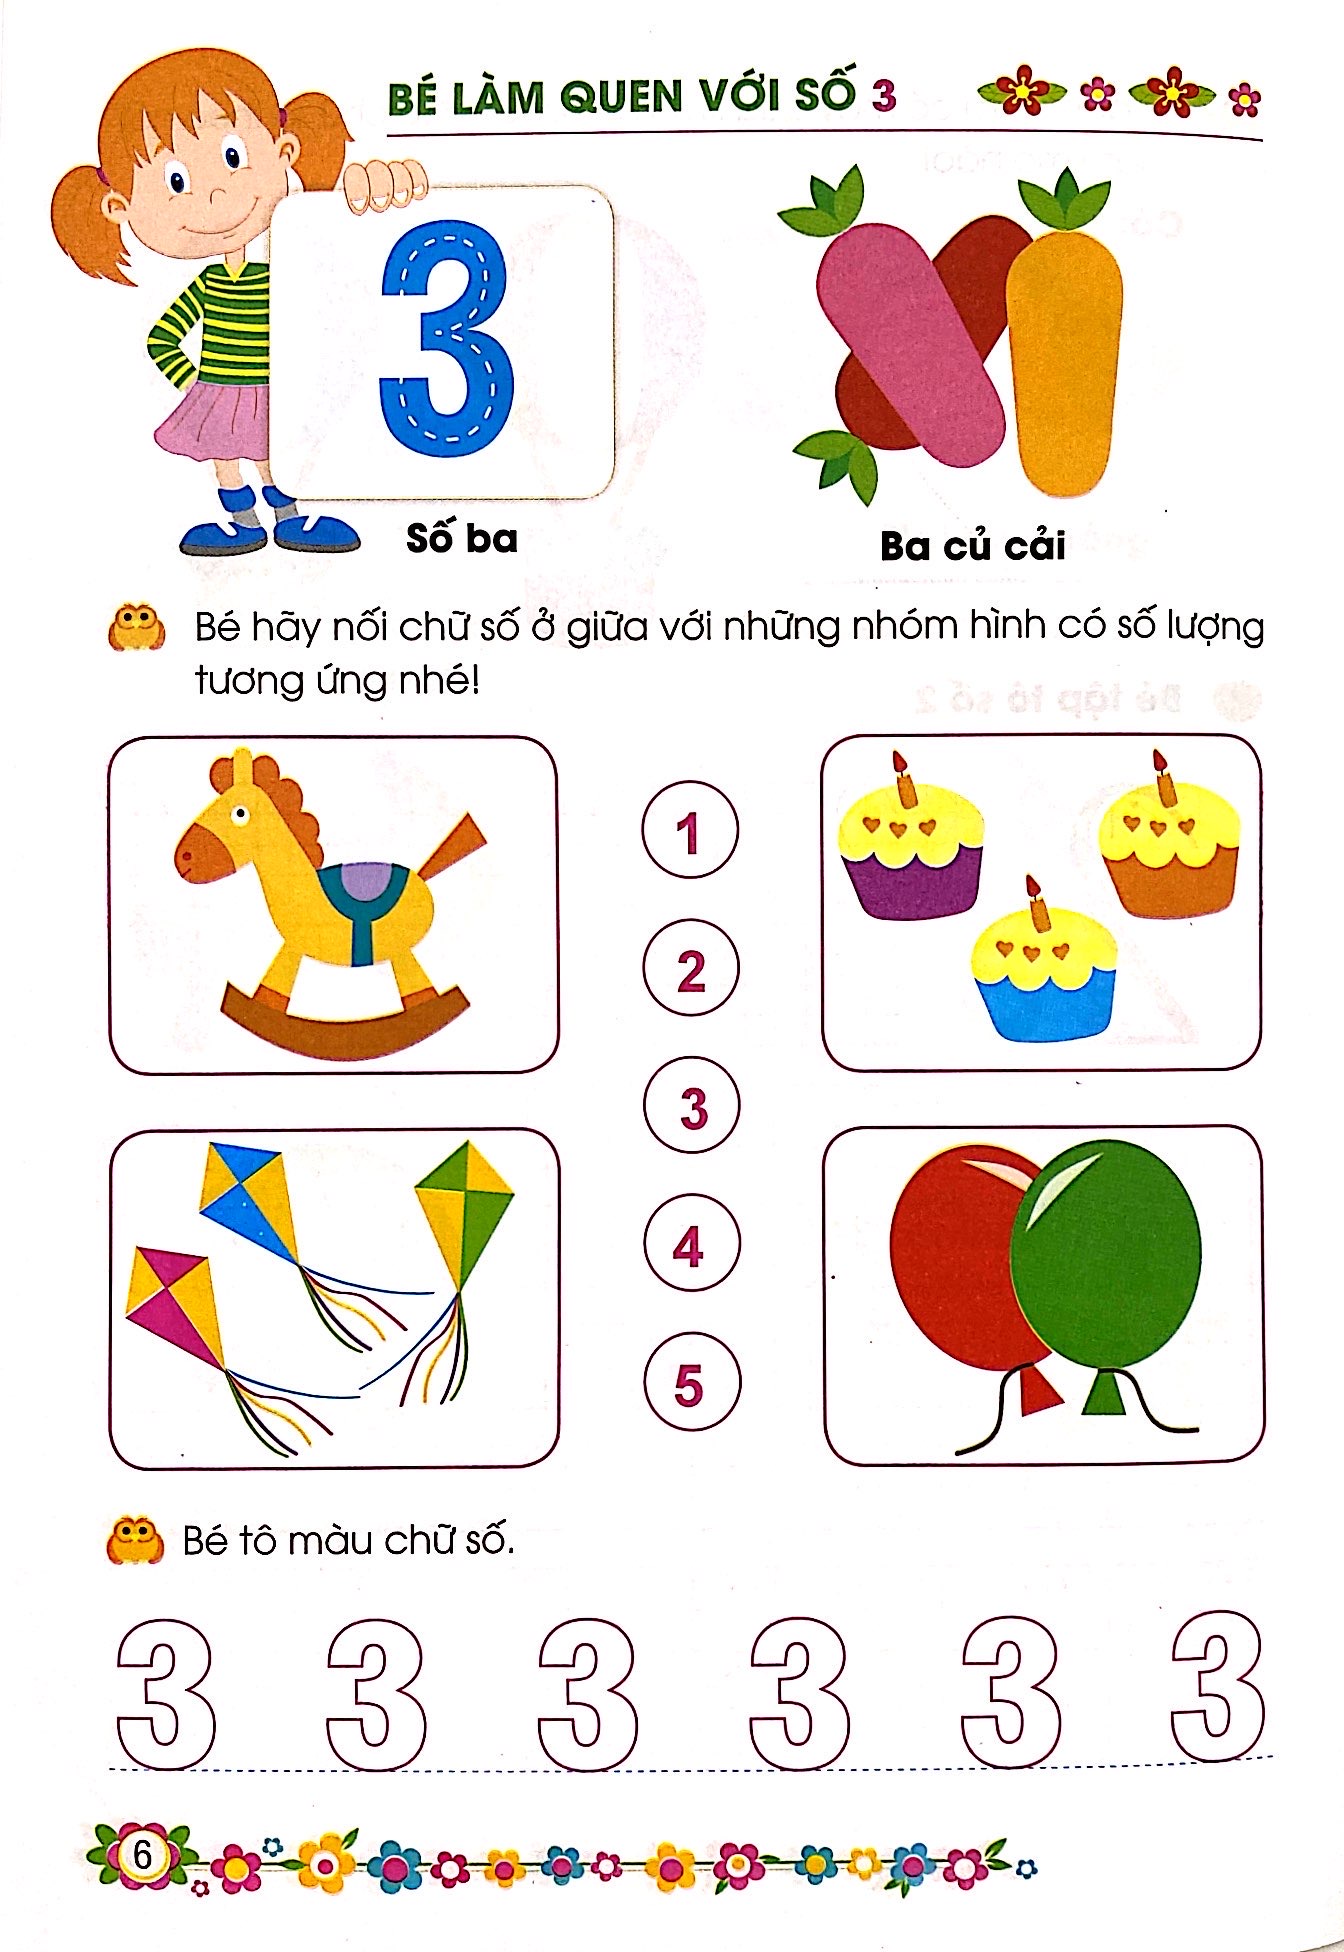 Bài tập tiếng Anh về màu sắc lớp 1 hay nhất cho bé (có đáp án)